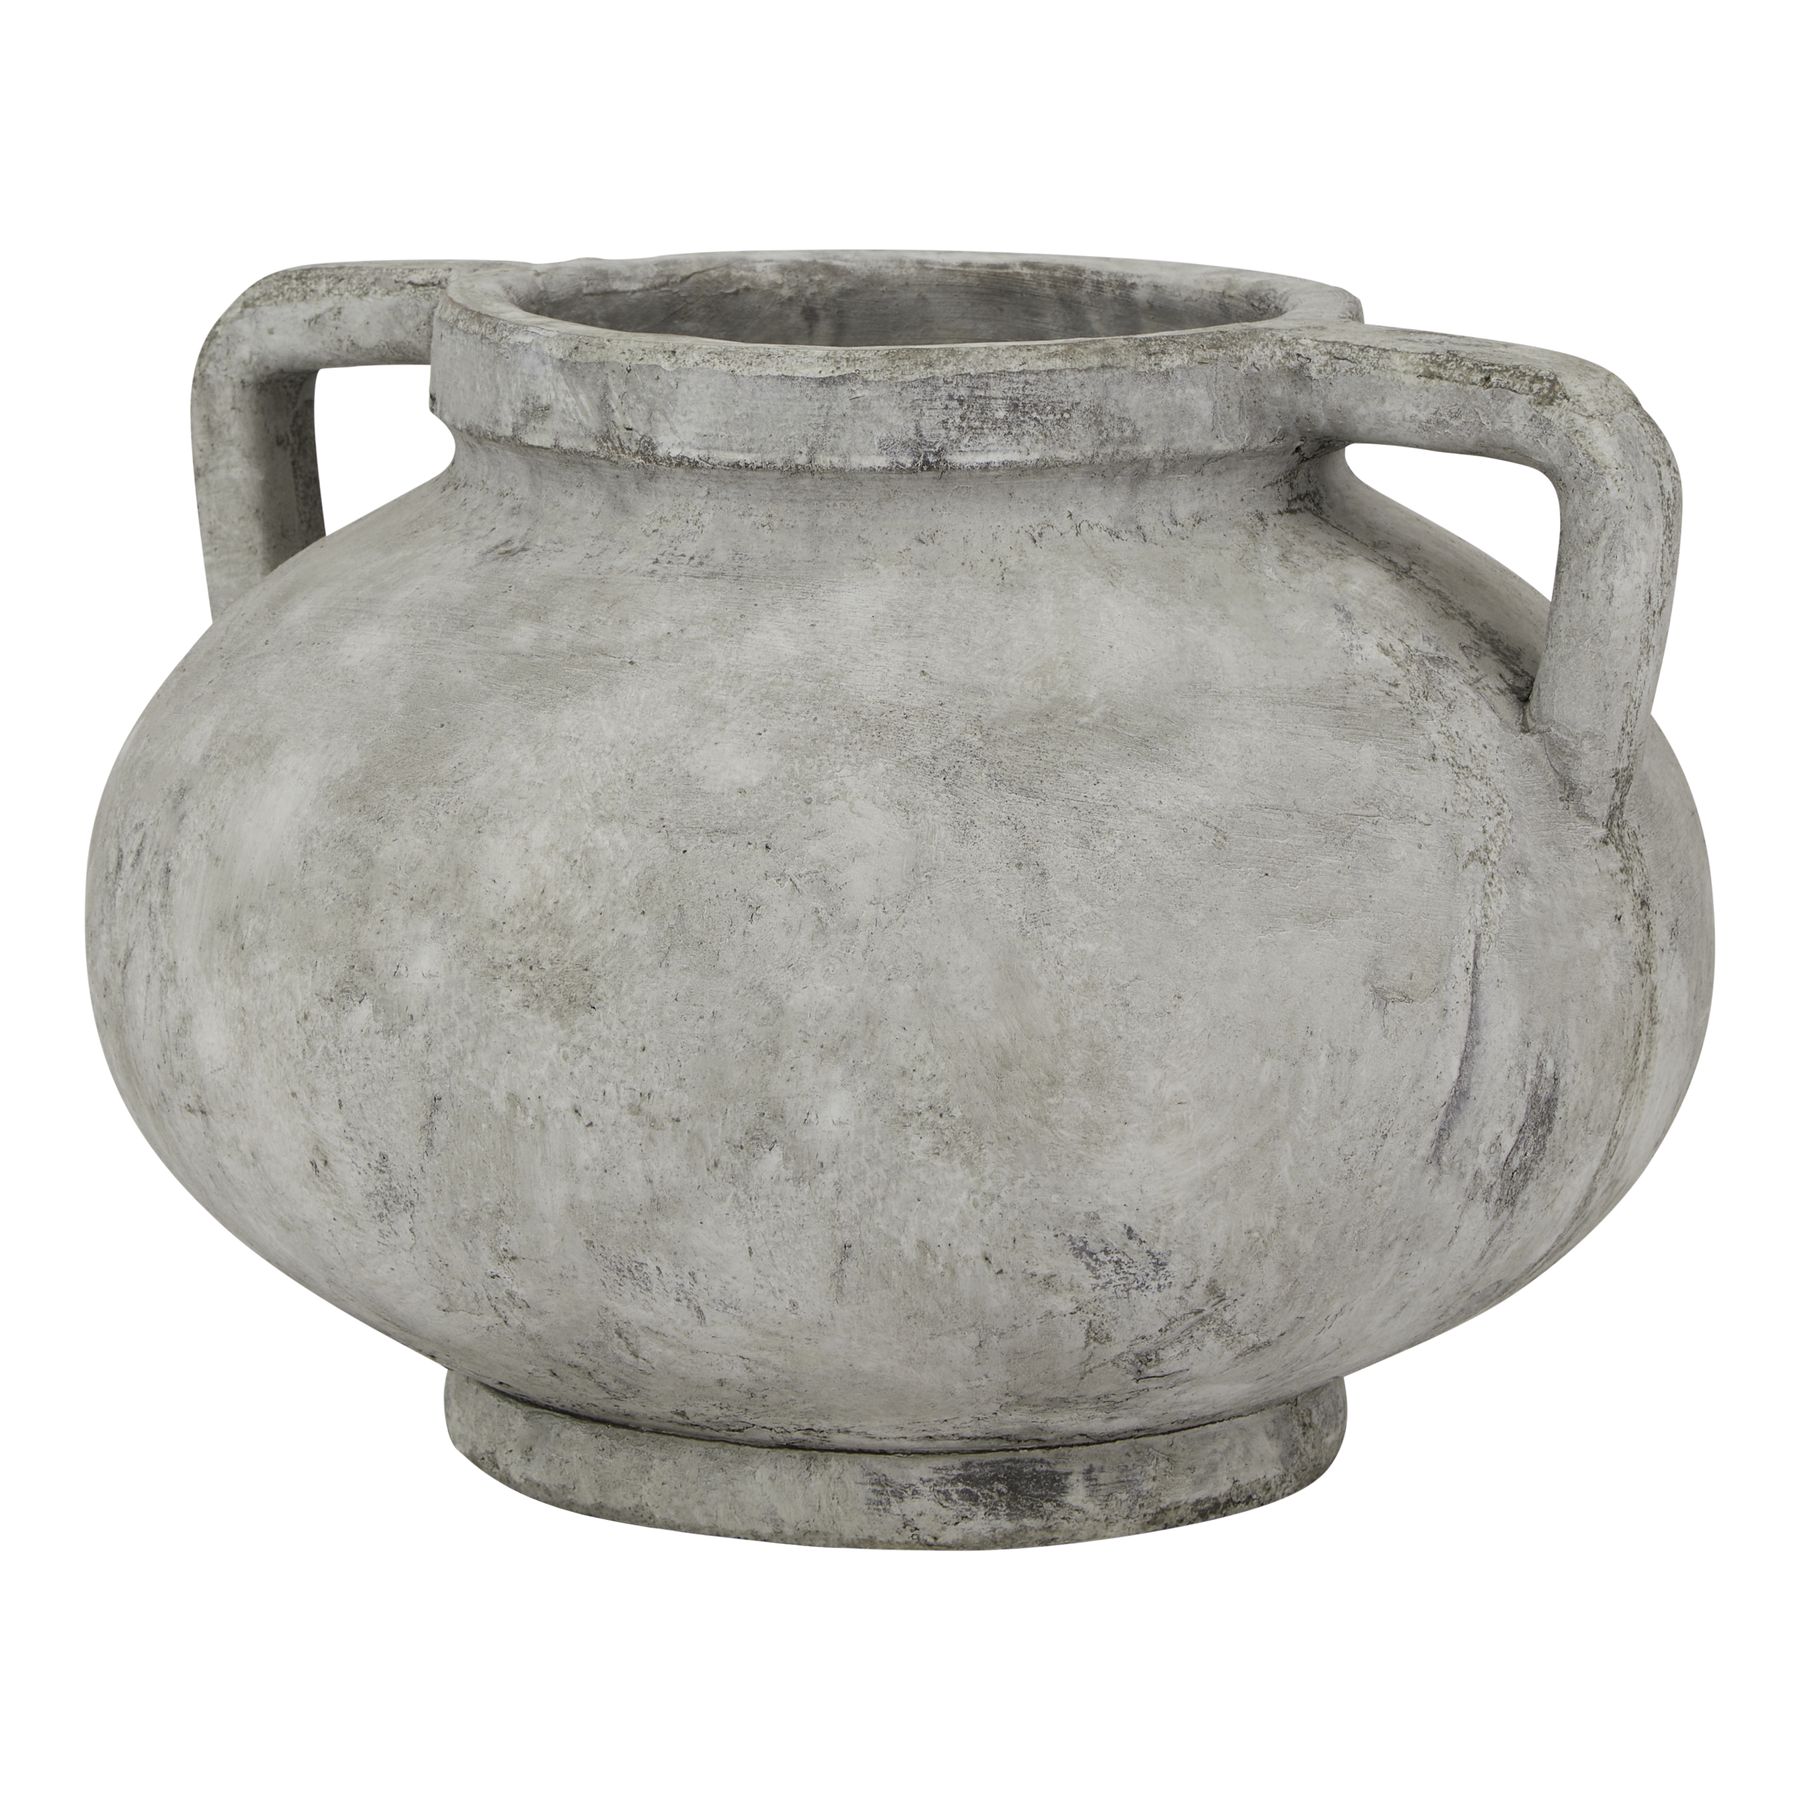 Athena Stone Large Pelike Pot - Image 1